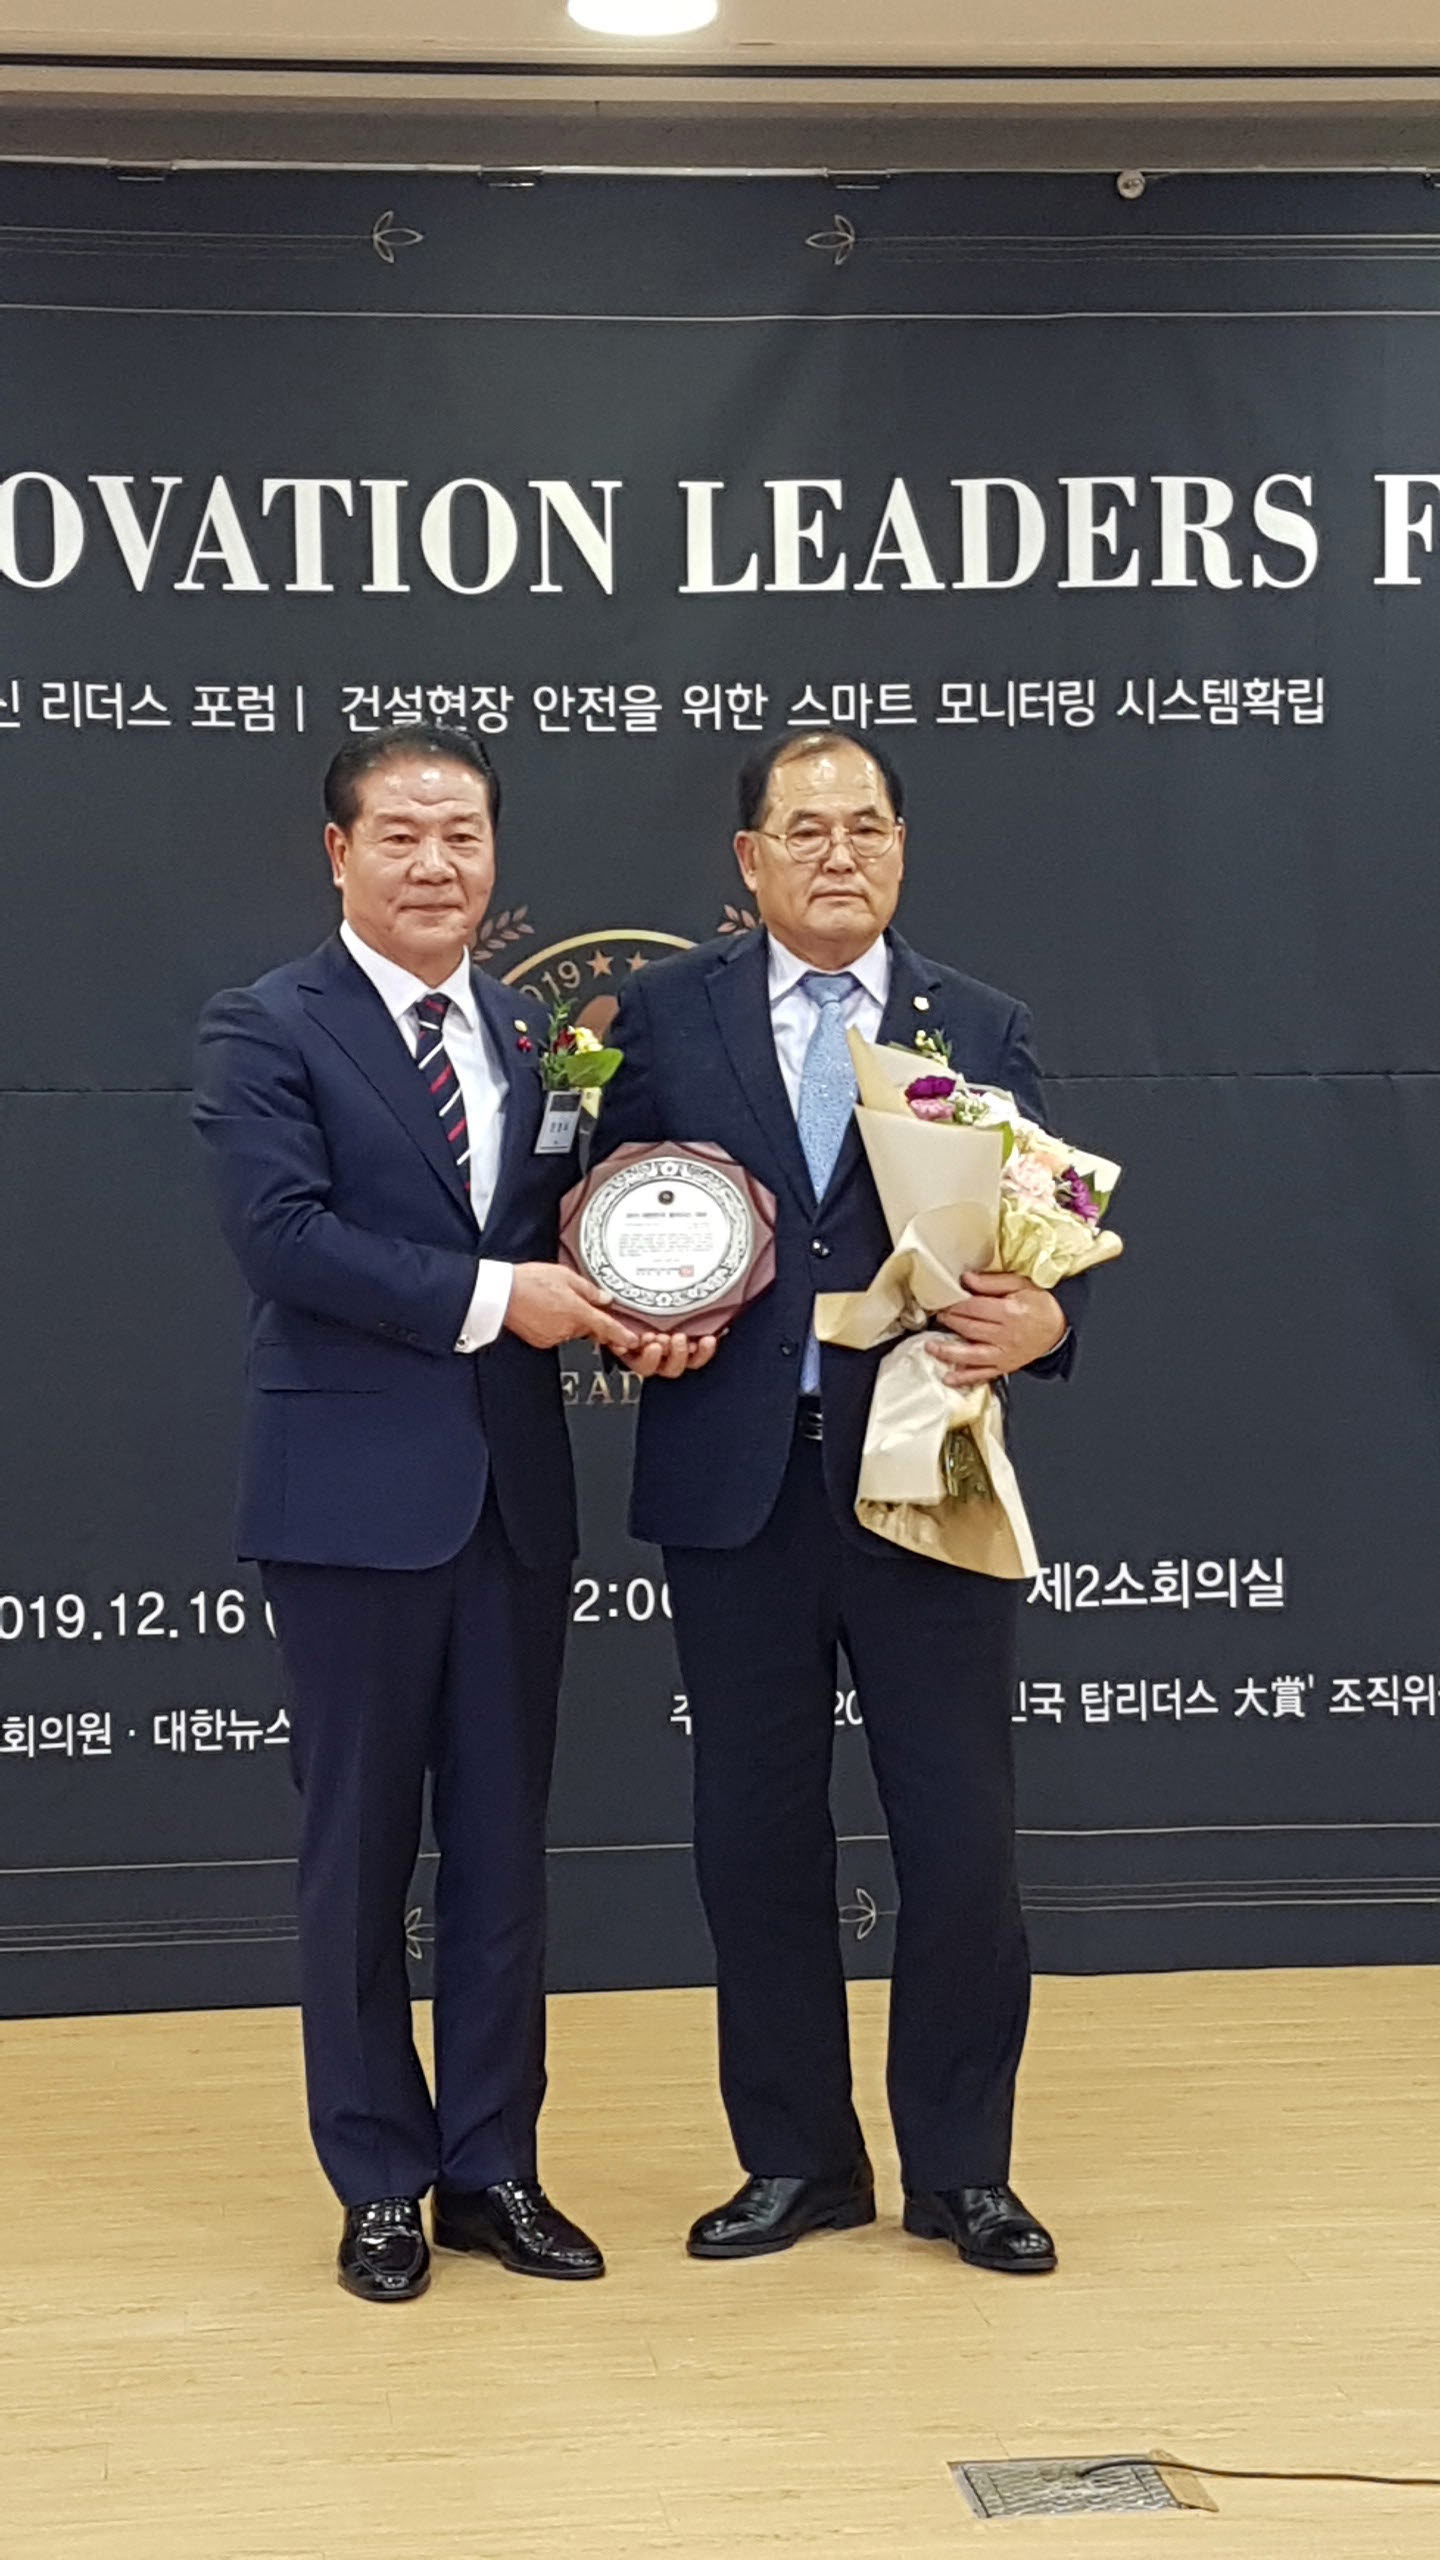 정읍시의회 최낙삼 의장은  ㈜네오에서 주관하는『2019 대한민국 탑리더스 대상』우수의정활동 부문에서 대상을 수상하였다.